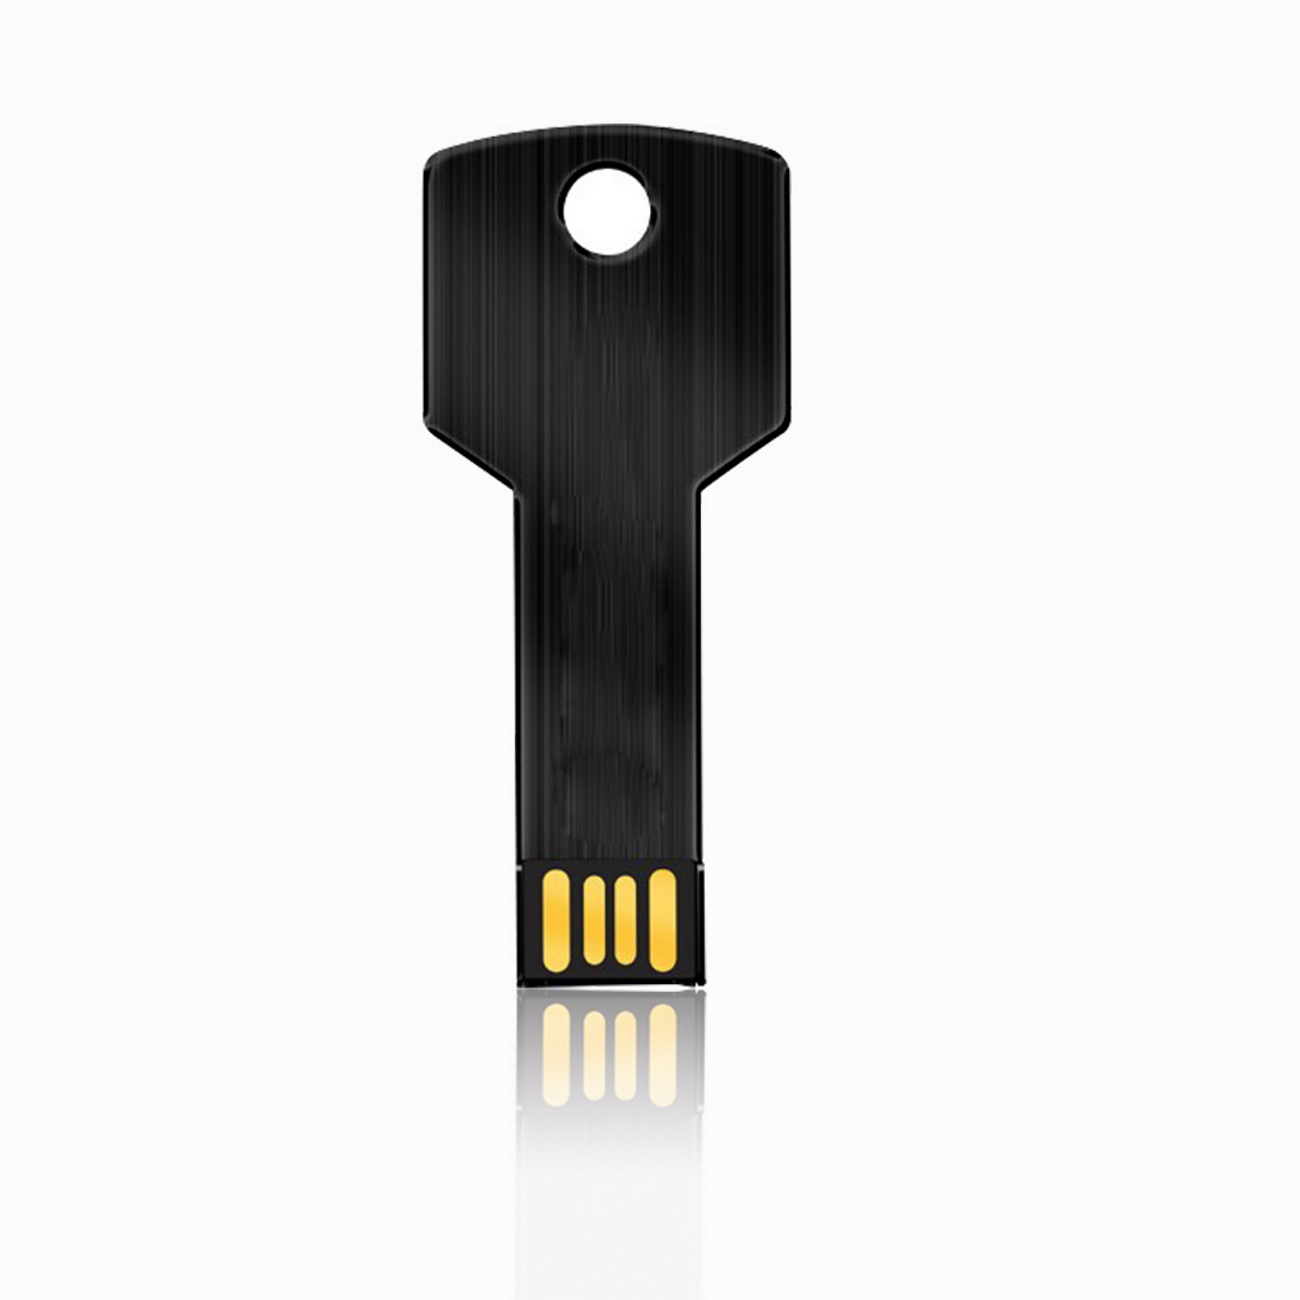 USB GERMANY Key Schwarz 1GB GB) USB-Stick (Schwarz, 1